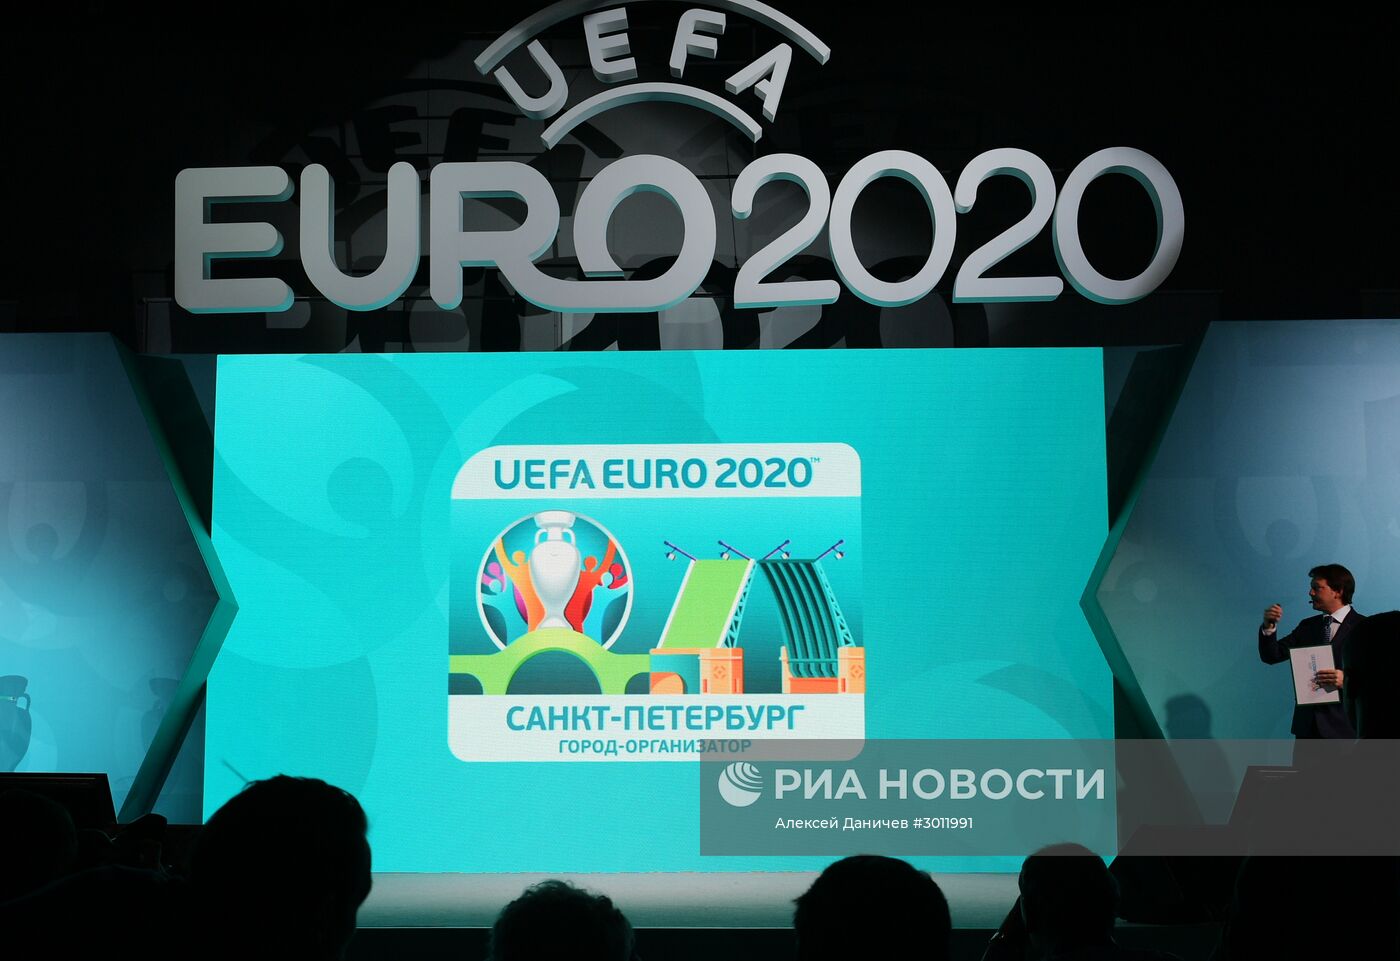 Презентация официальной эмблемы Санкт-Петербурга - города-организатора Евро-2020